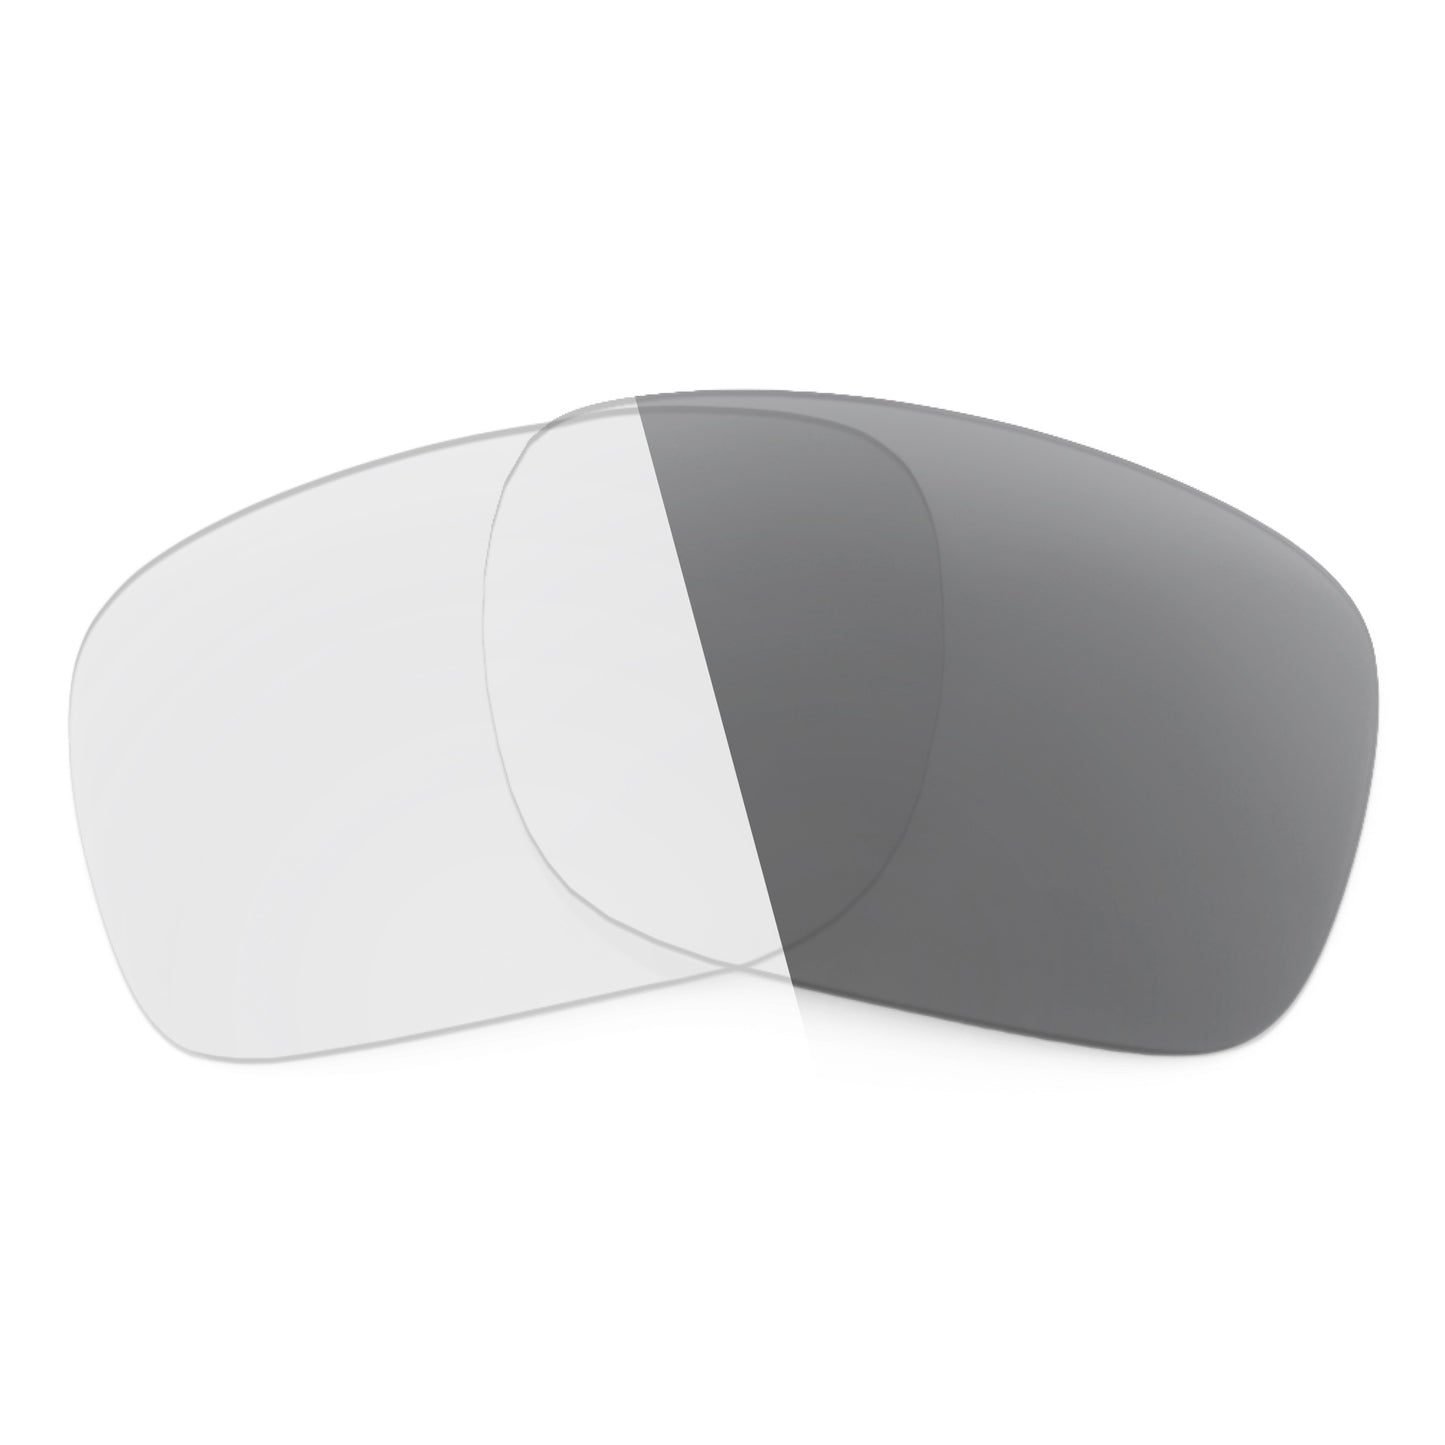 Revant replacement lenses for Nike Endeavor Non-Polarized Adapt Gray Photochromic